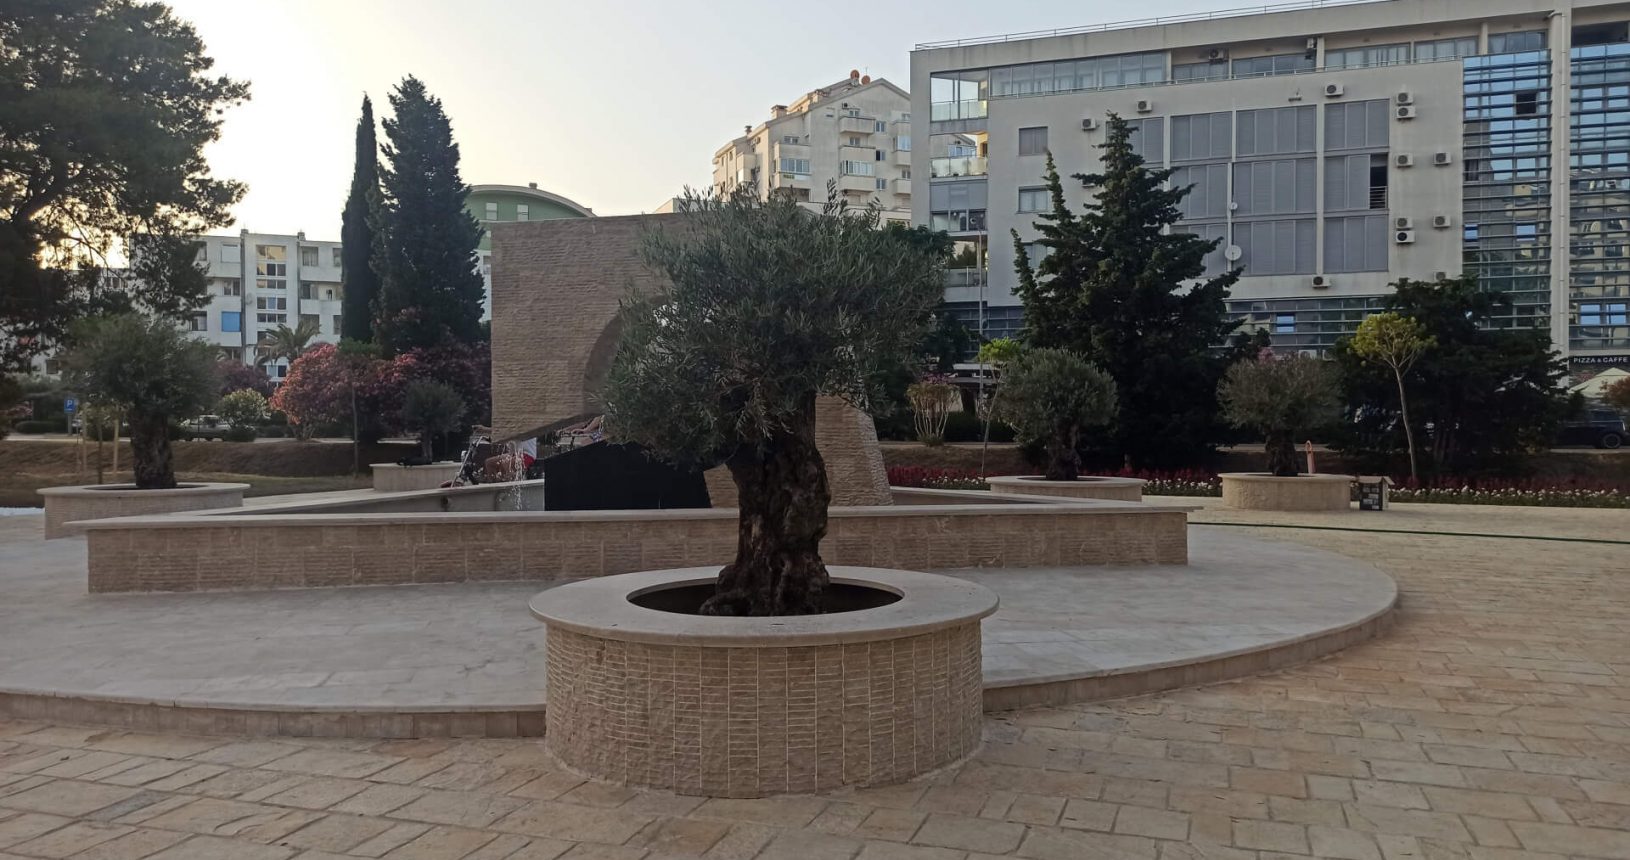 New fountain behind Zetagradnja